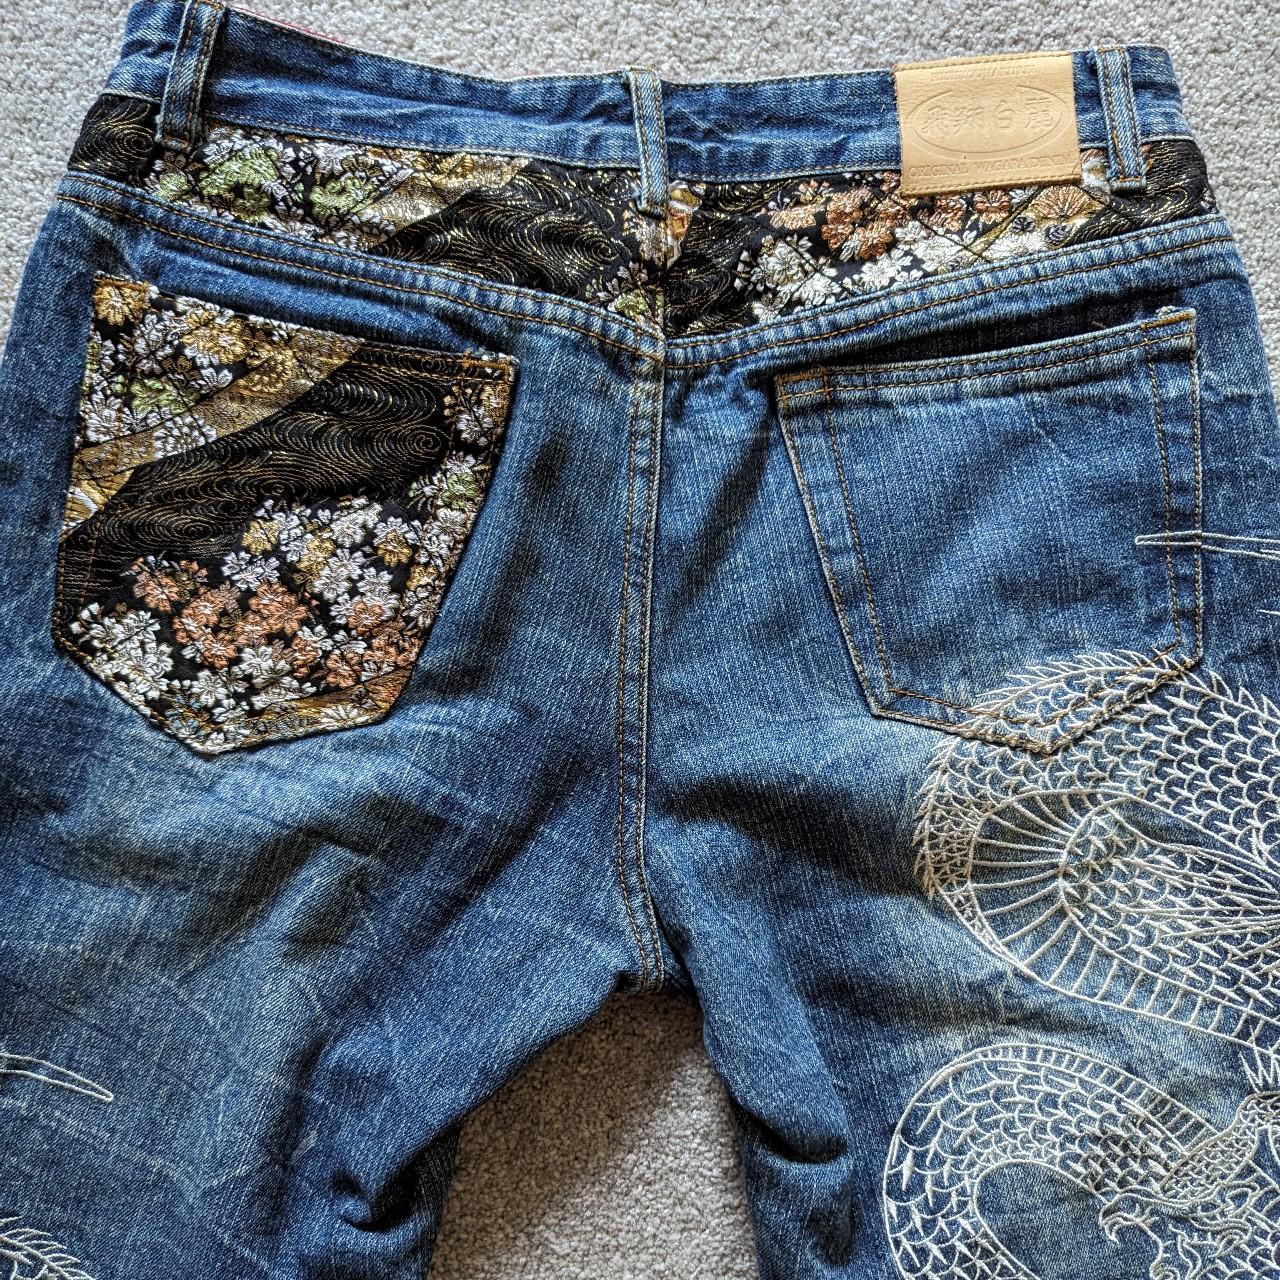 HISHYOUHAKUREI dragon jeans - original wagara... - Depop